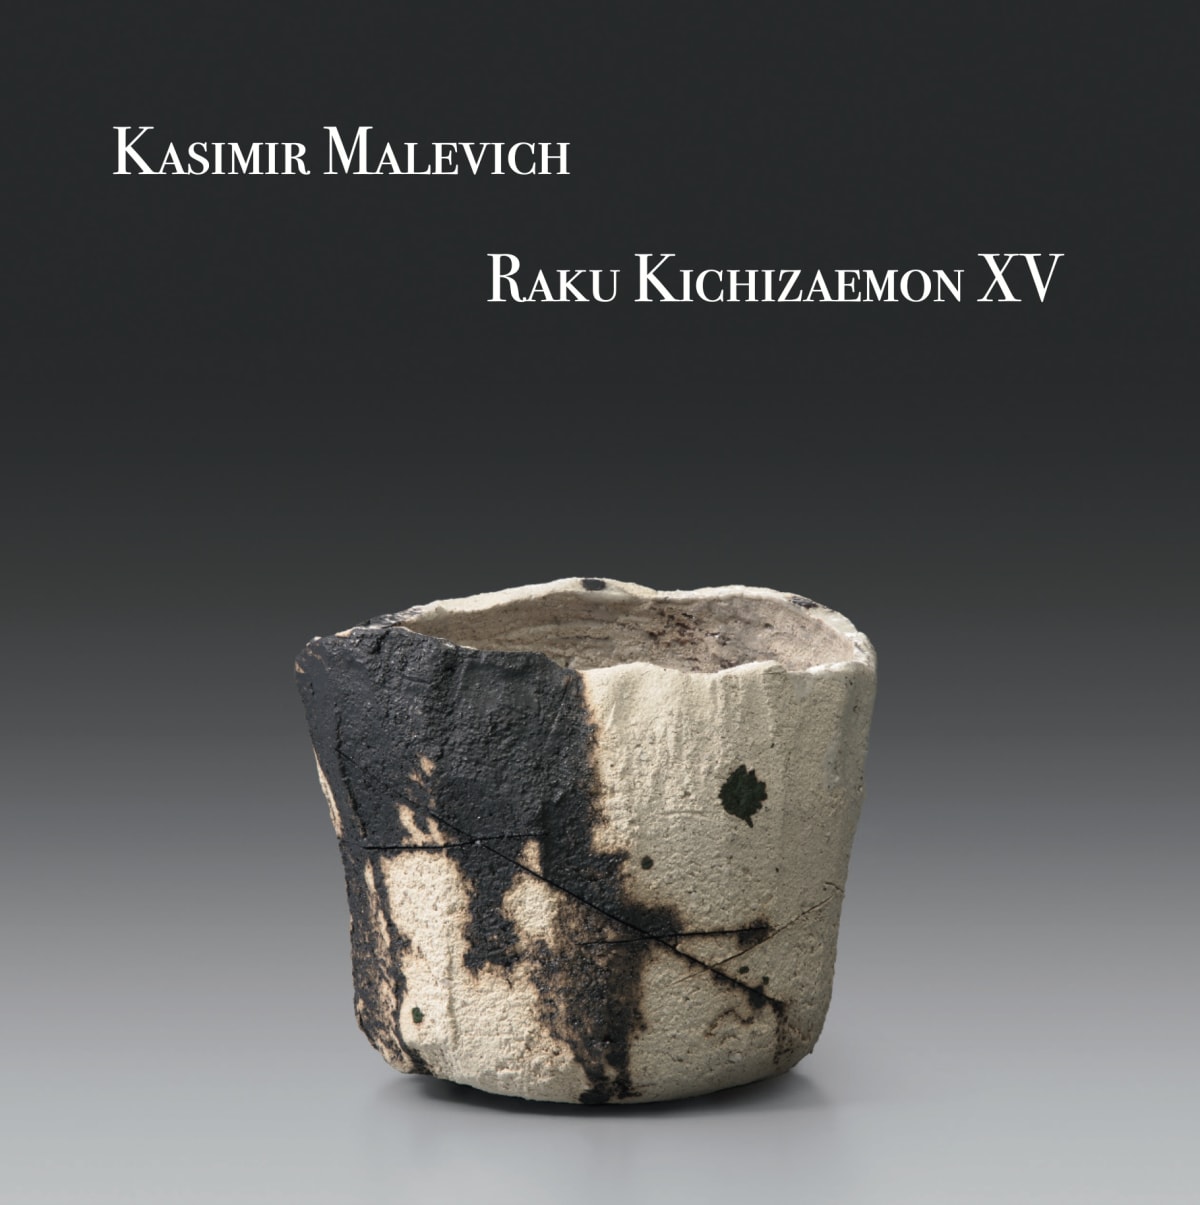 Kasimir Malevich, Raku Kichizaemon XV